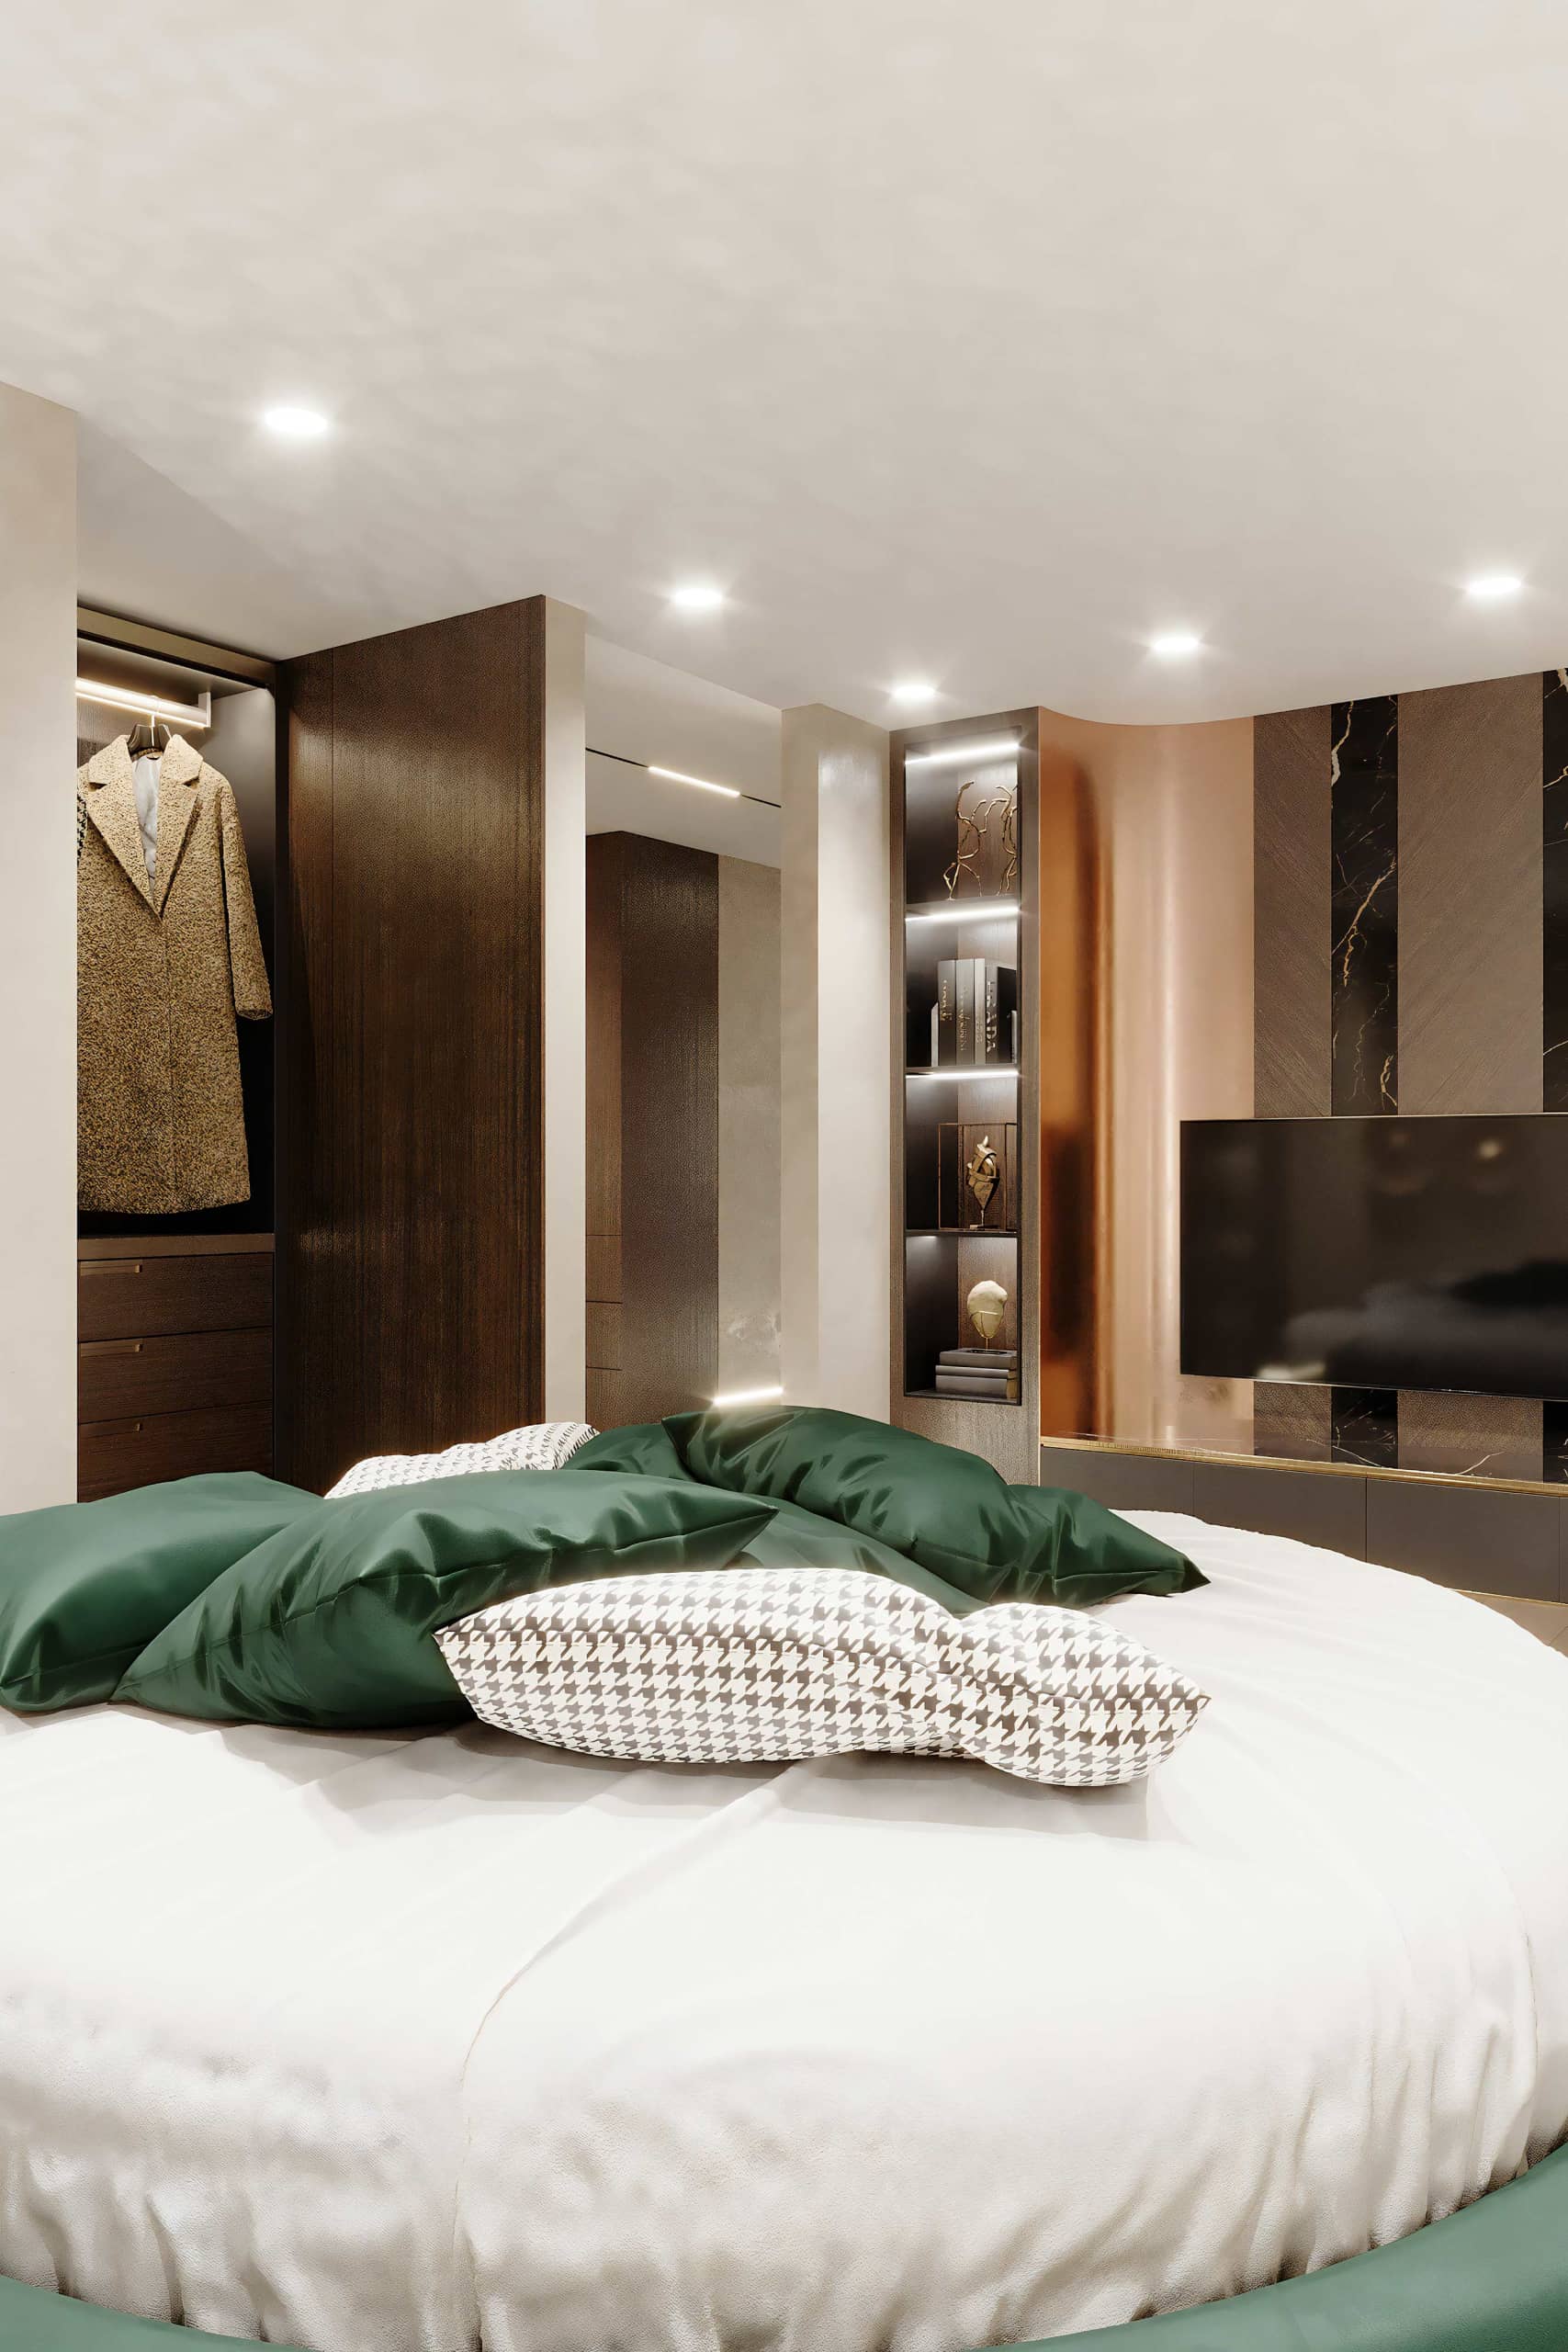 Оформление интерьера спальни в стиле ар-деко. Фото № 69766.